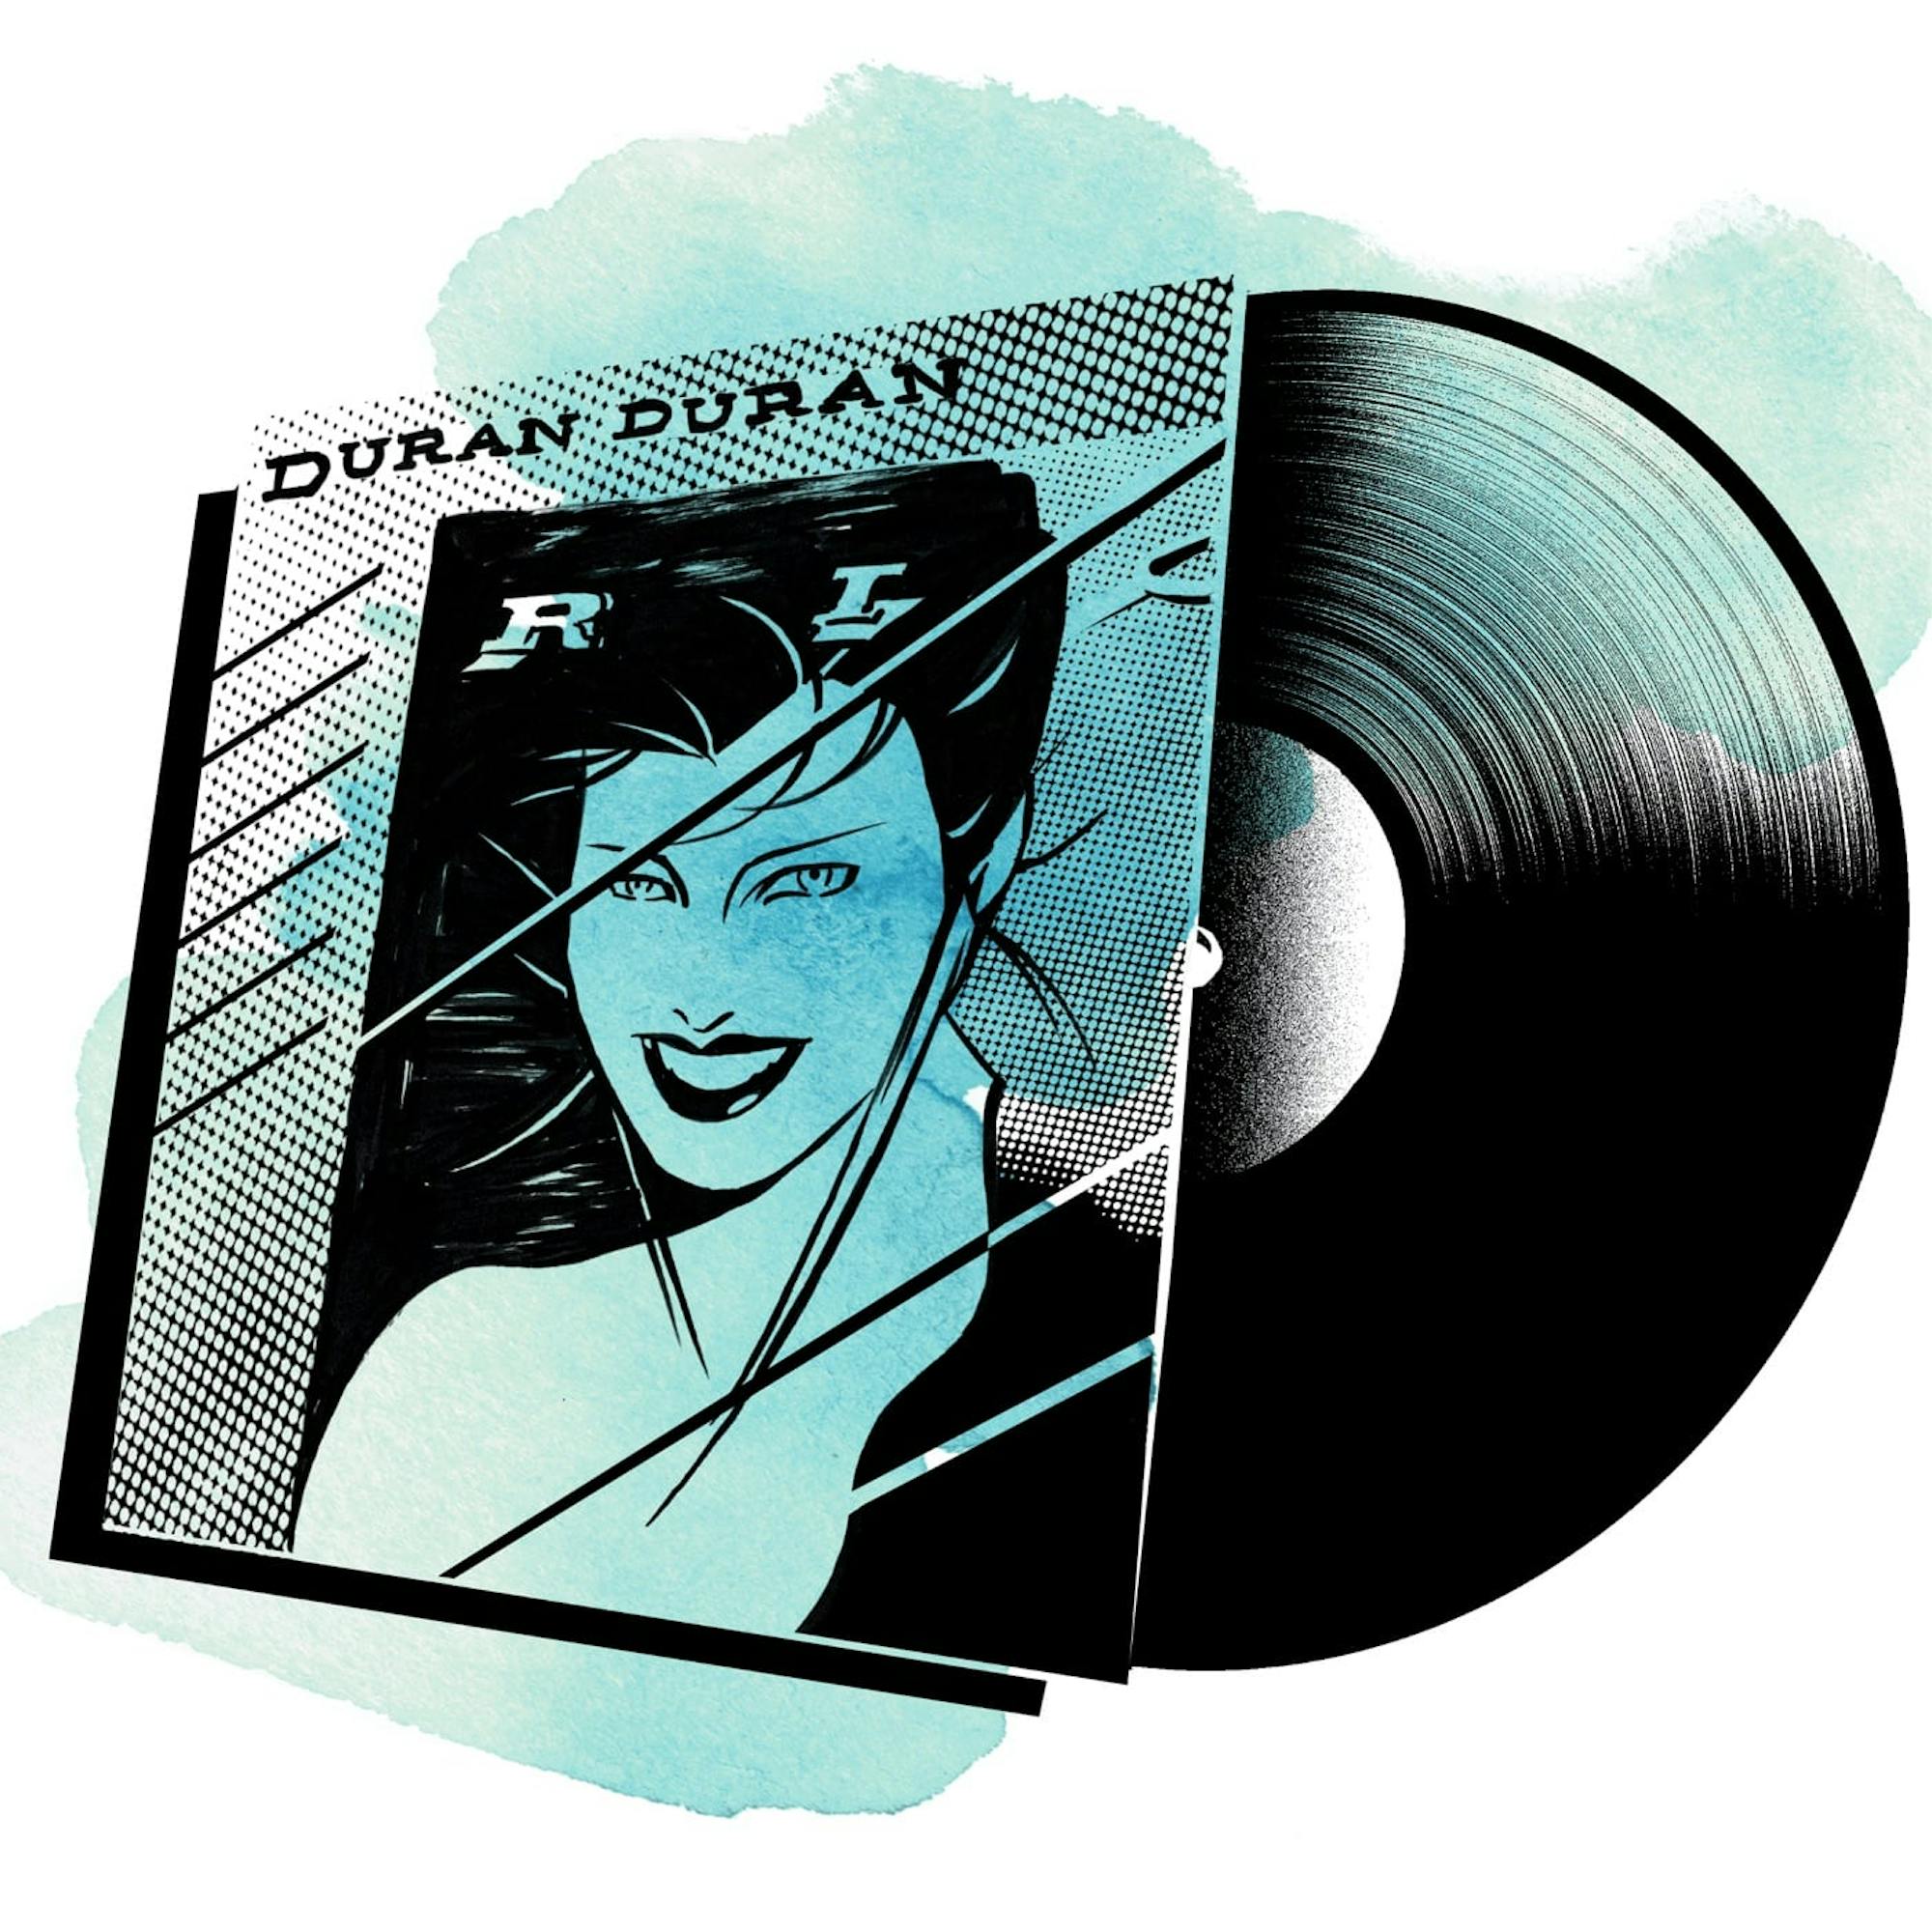 Duran Duran on vinyl